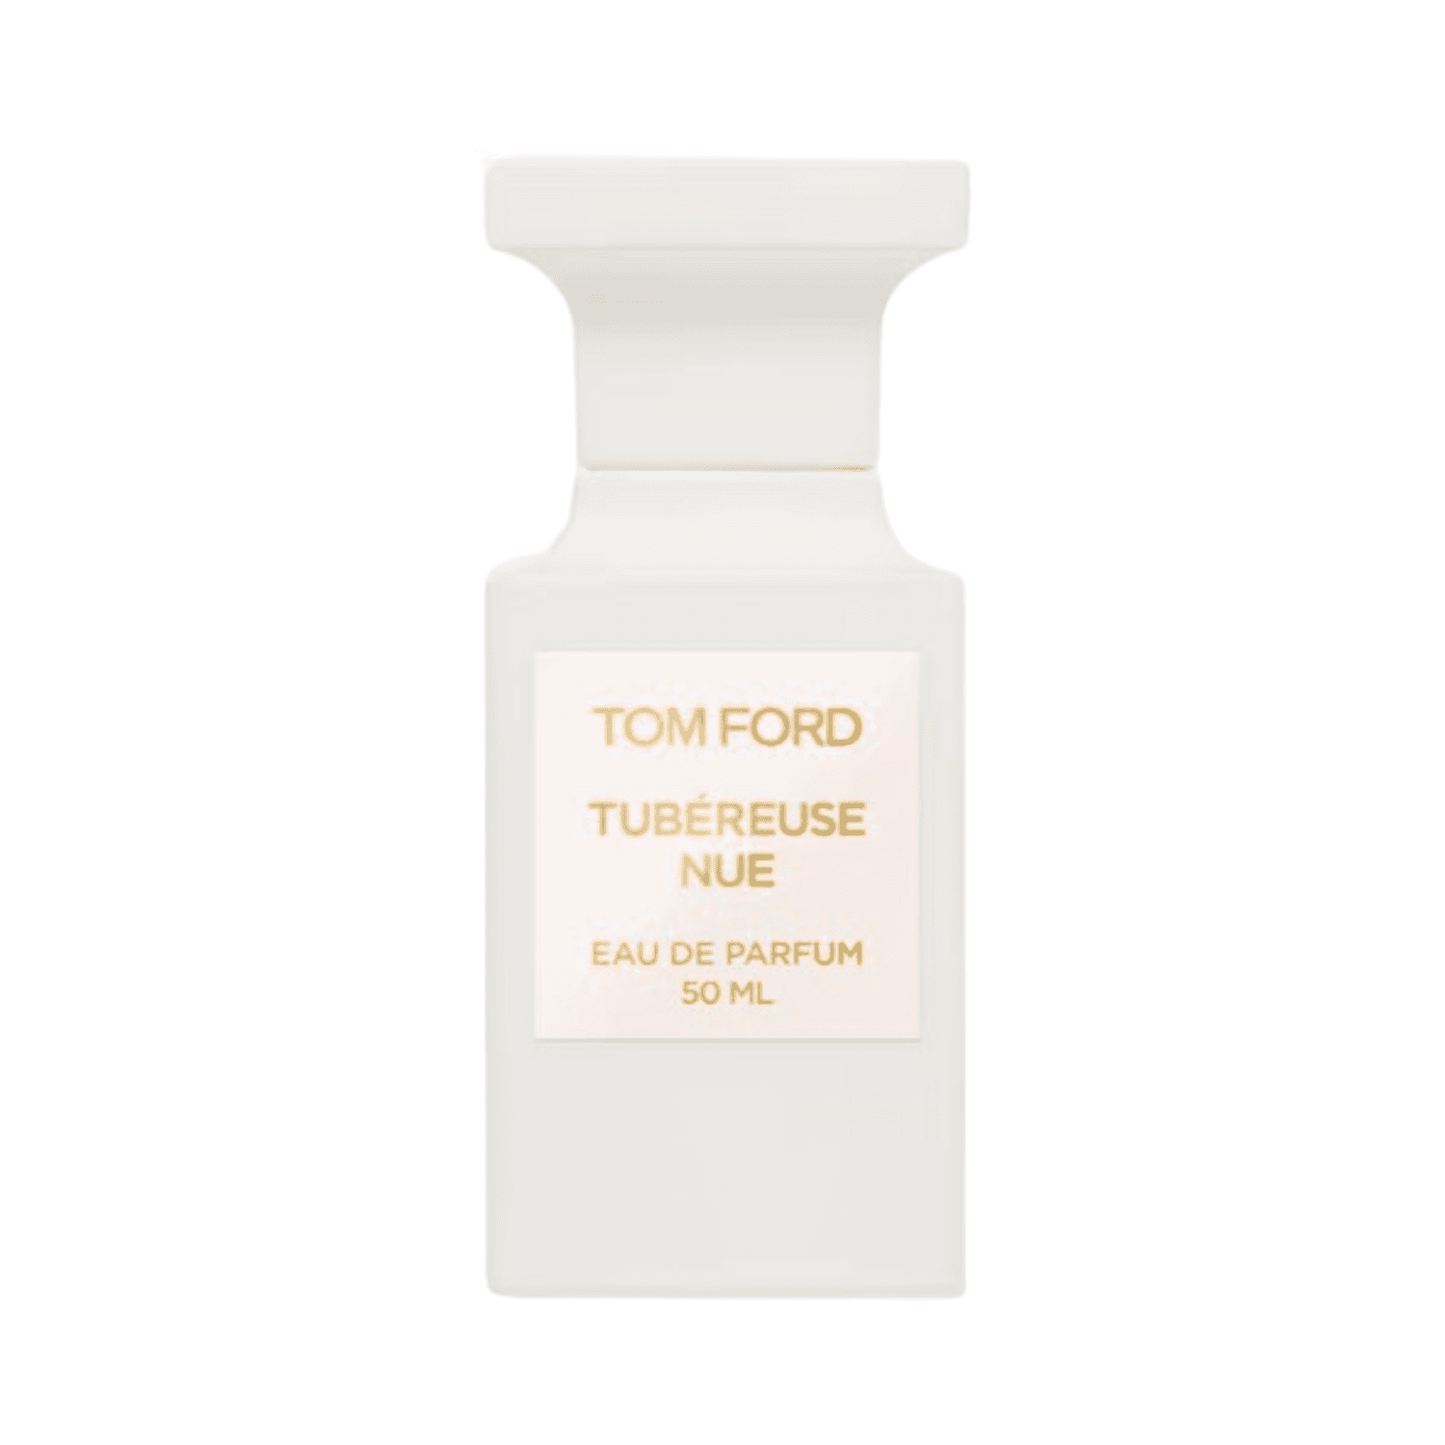 Tom Ford Tubereuse Nue Eau De Parfum